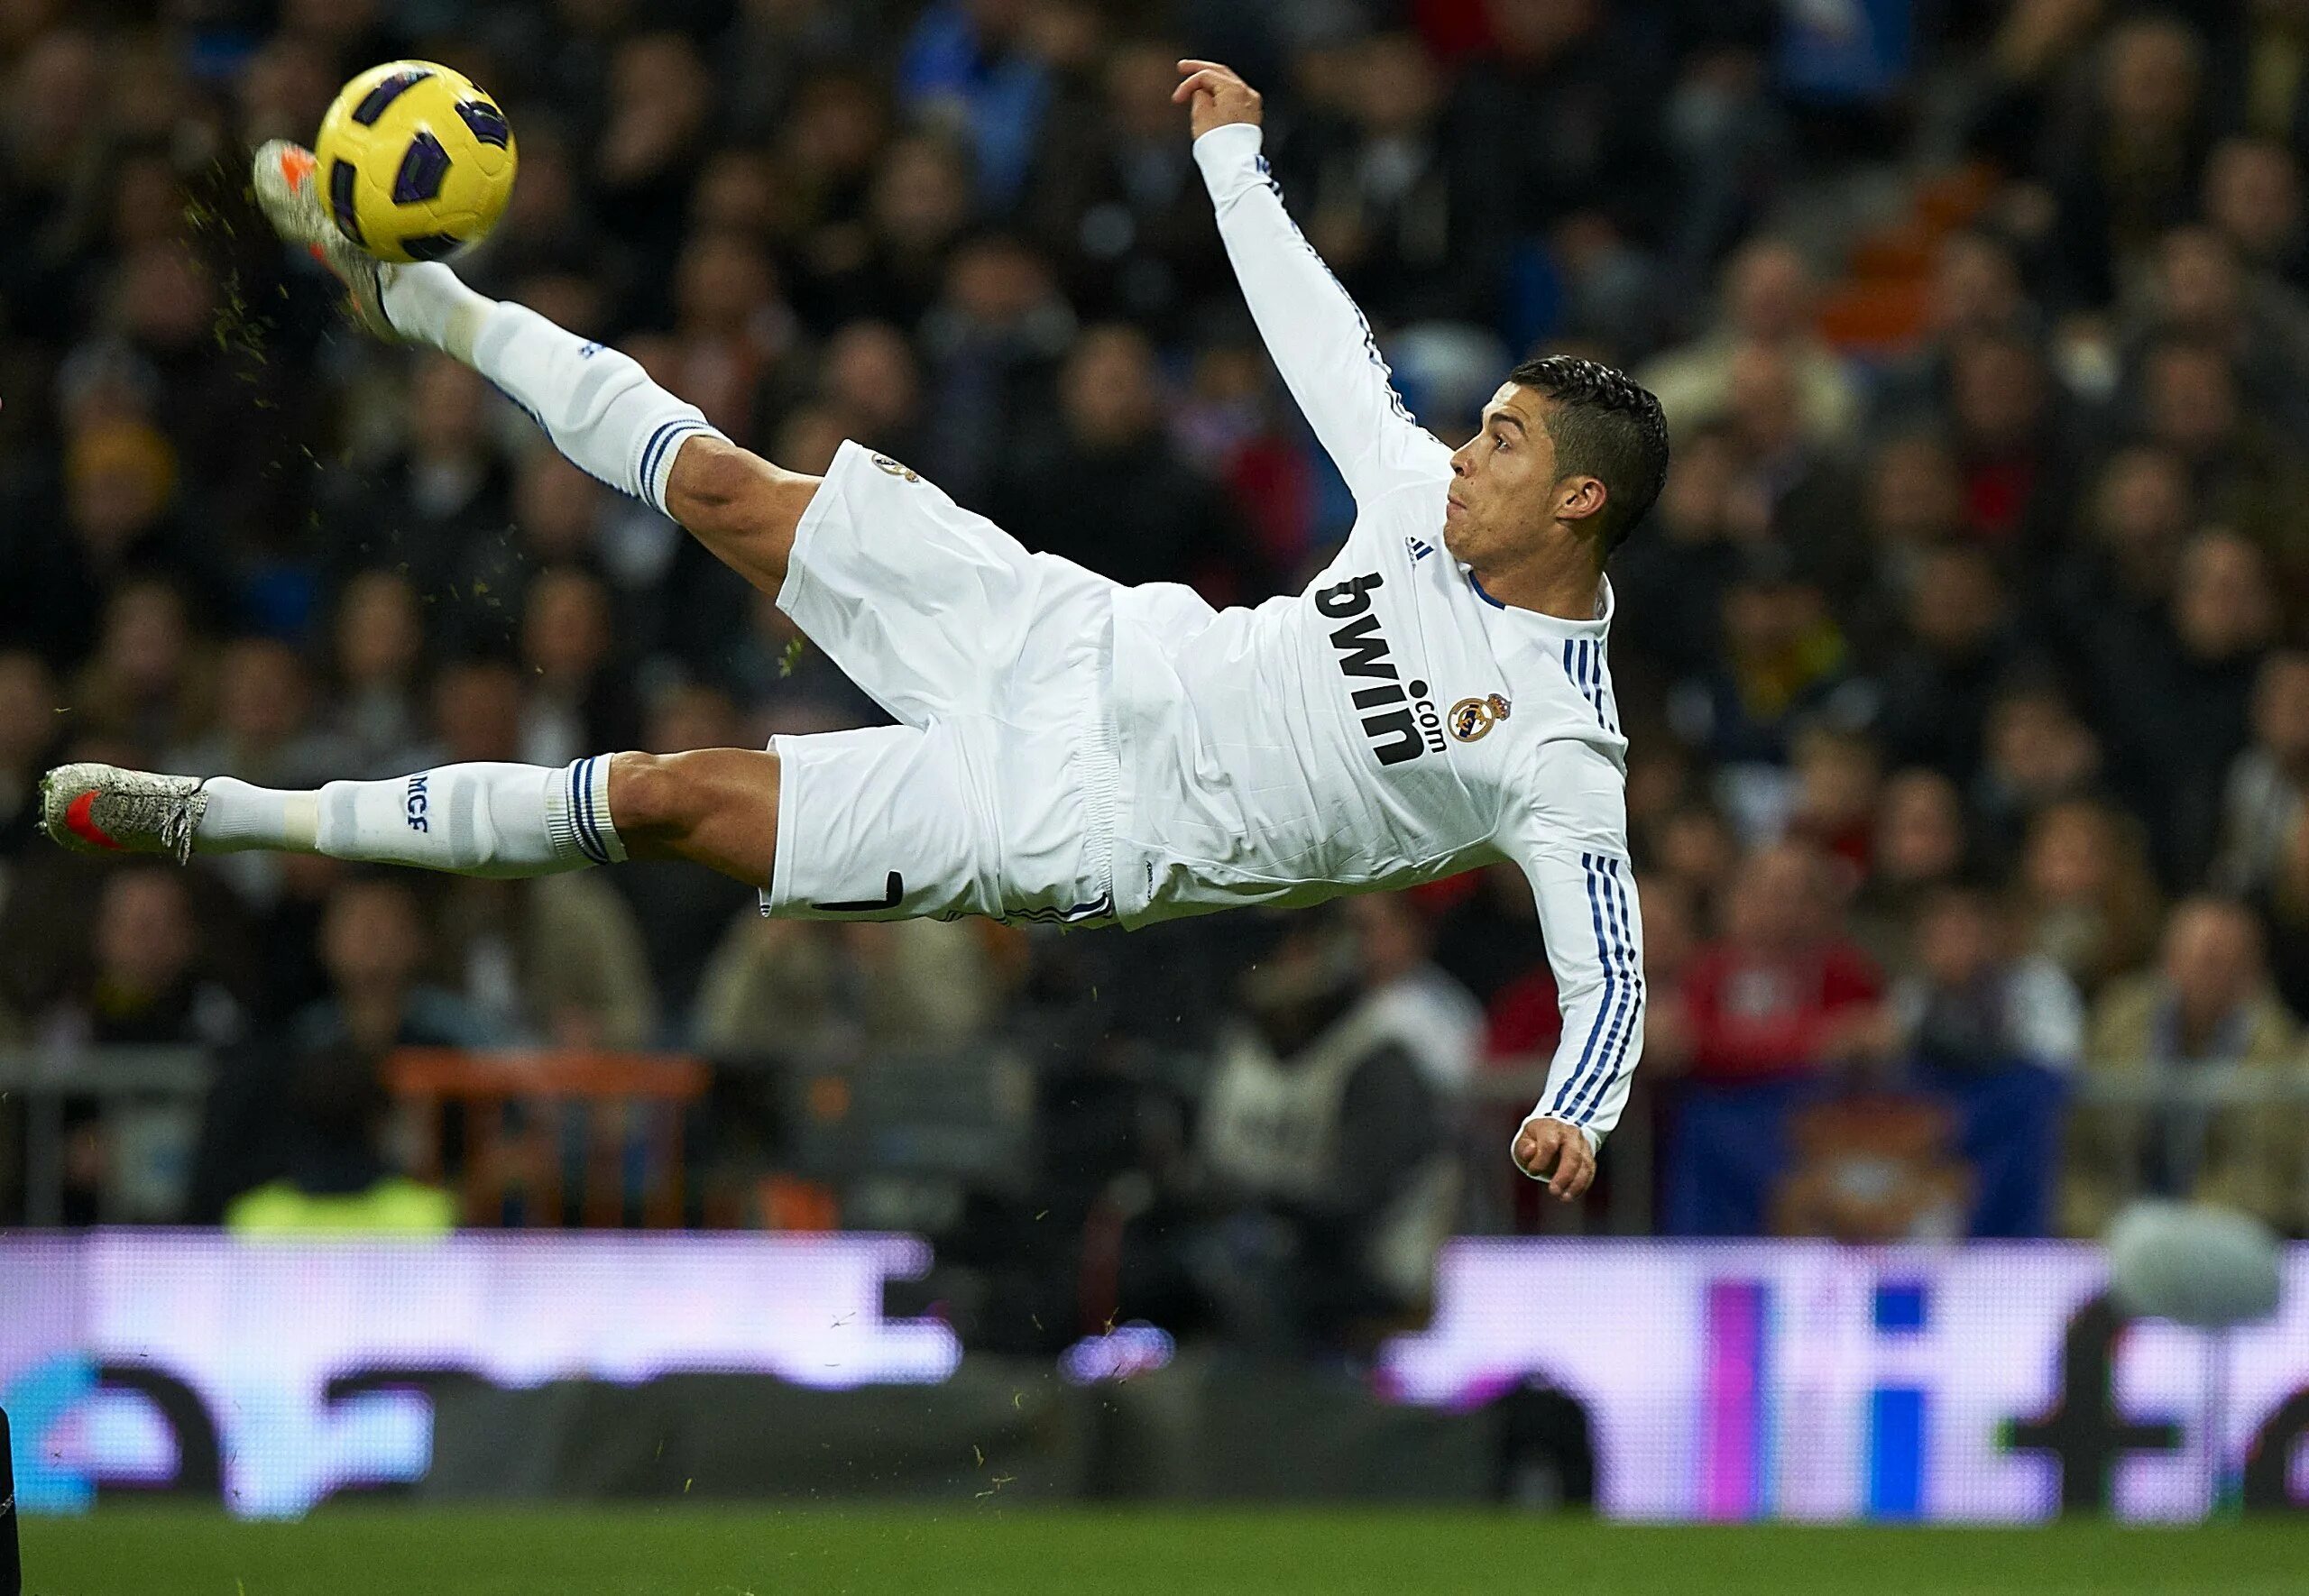 Криштиану Роналду удар через себя. Cristiano Ronaldo через себя. Игроки Реал Мадрид с Роналдо. Cristiano Ronaldo real Madrid 2010. Роналдо забивает гол головой